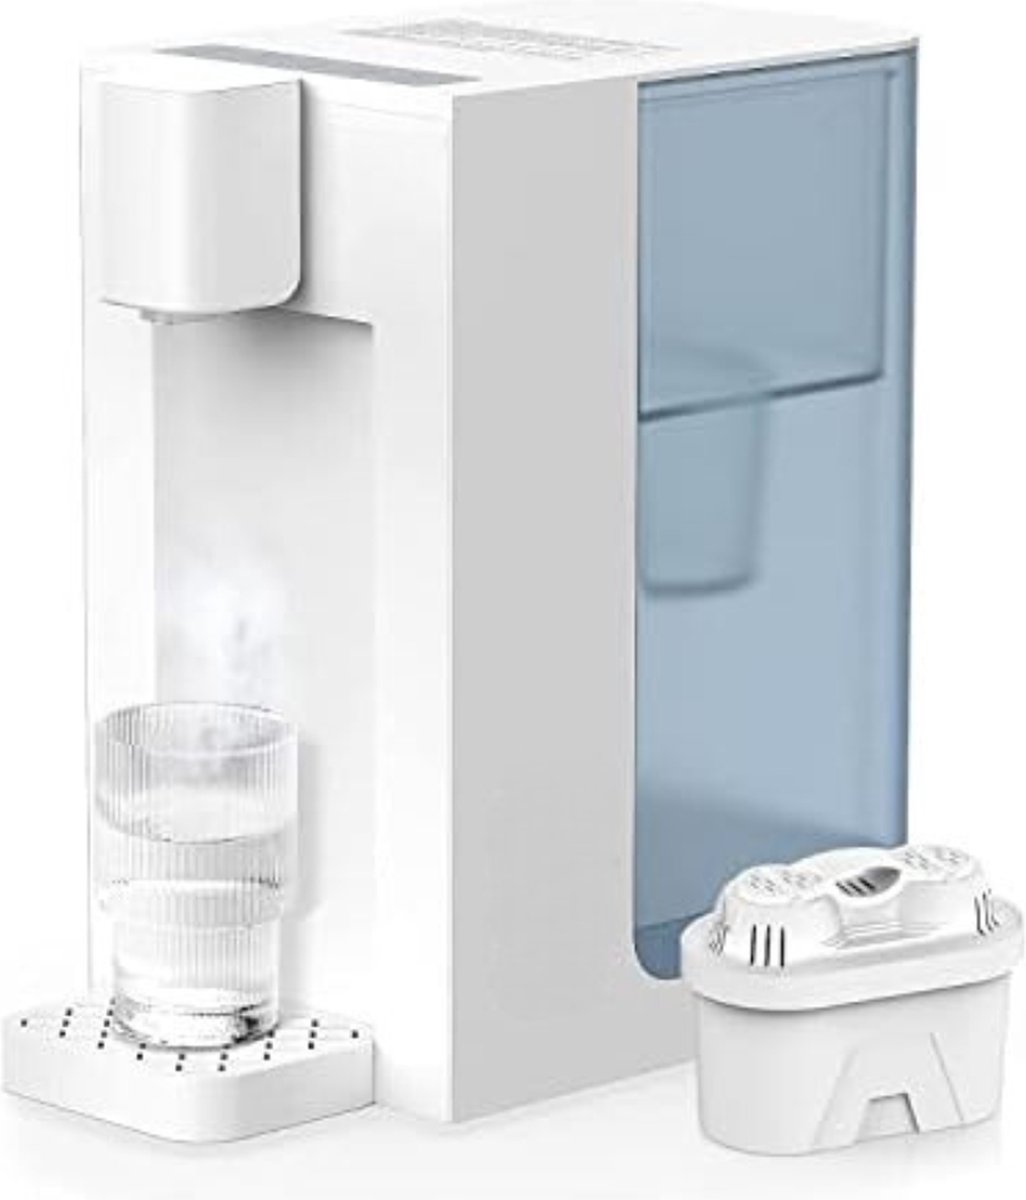 Instant Waterkoker - Heetwaterdispenser - Heetwatertap - Warmwaterdispenser - Kokend Water Dispenser - 4 Temperatuur